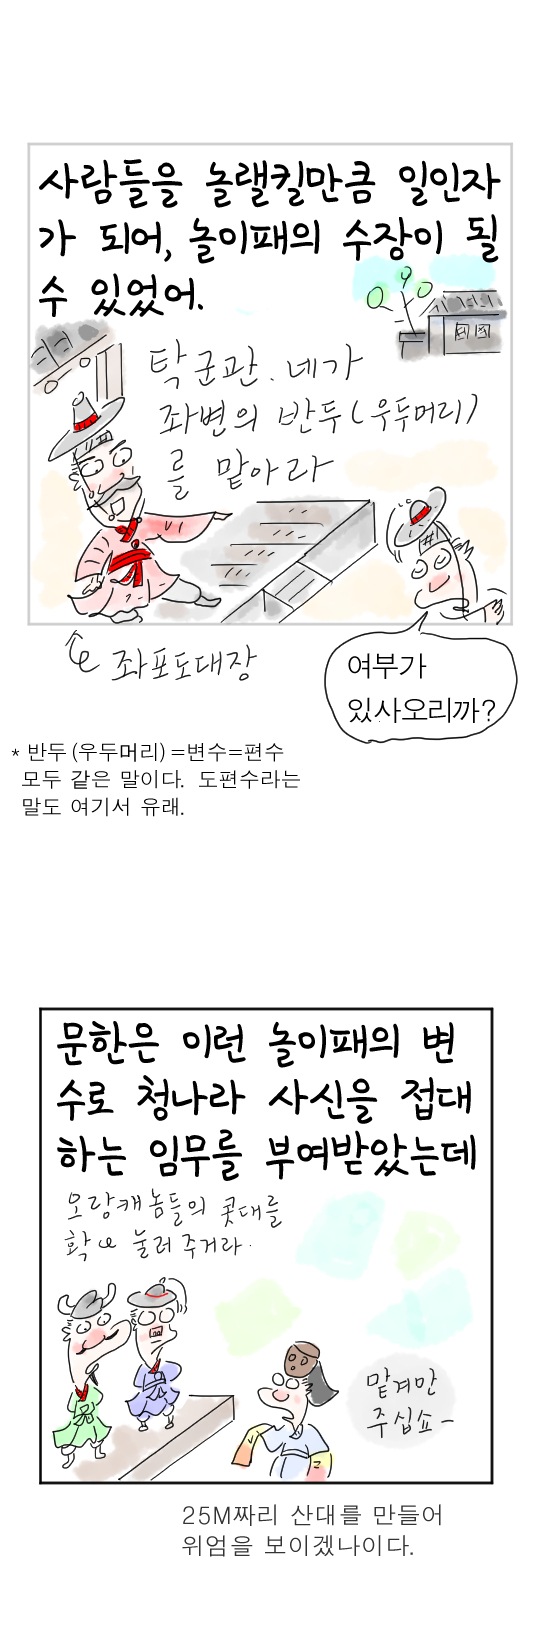 [역사툰] 史(사)람 이야기 20화: 조선 제일 춤꾼, 탁문한

